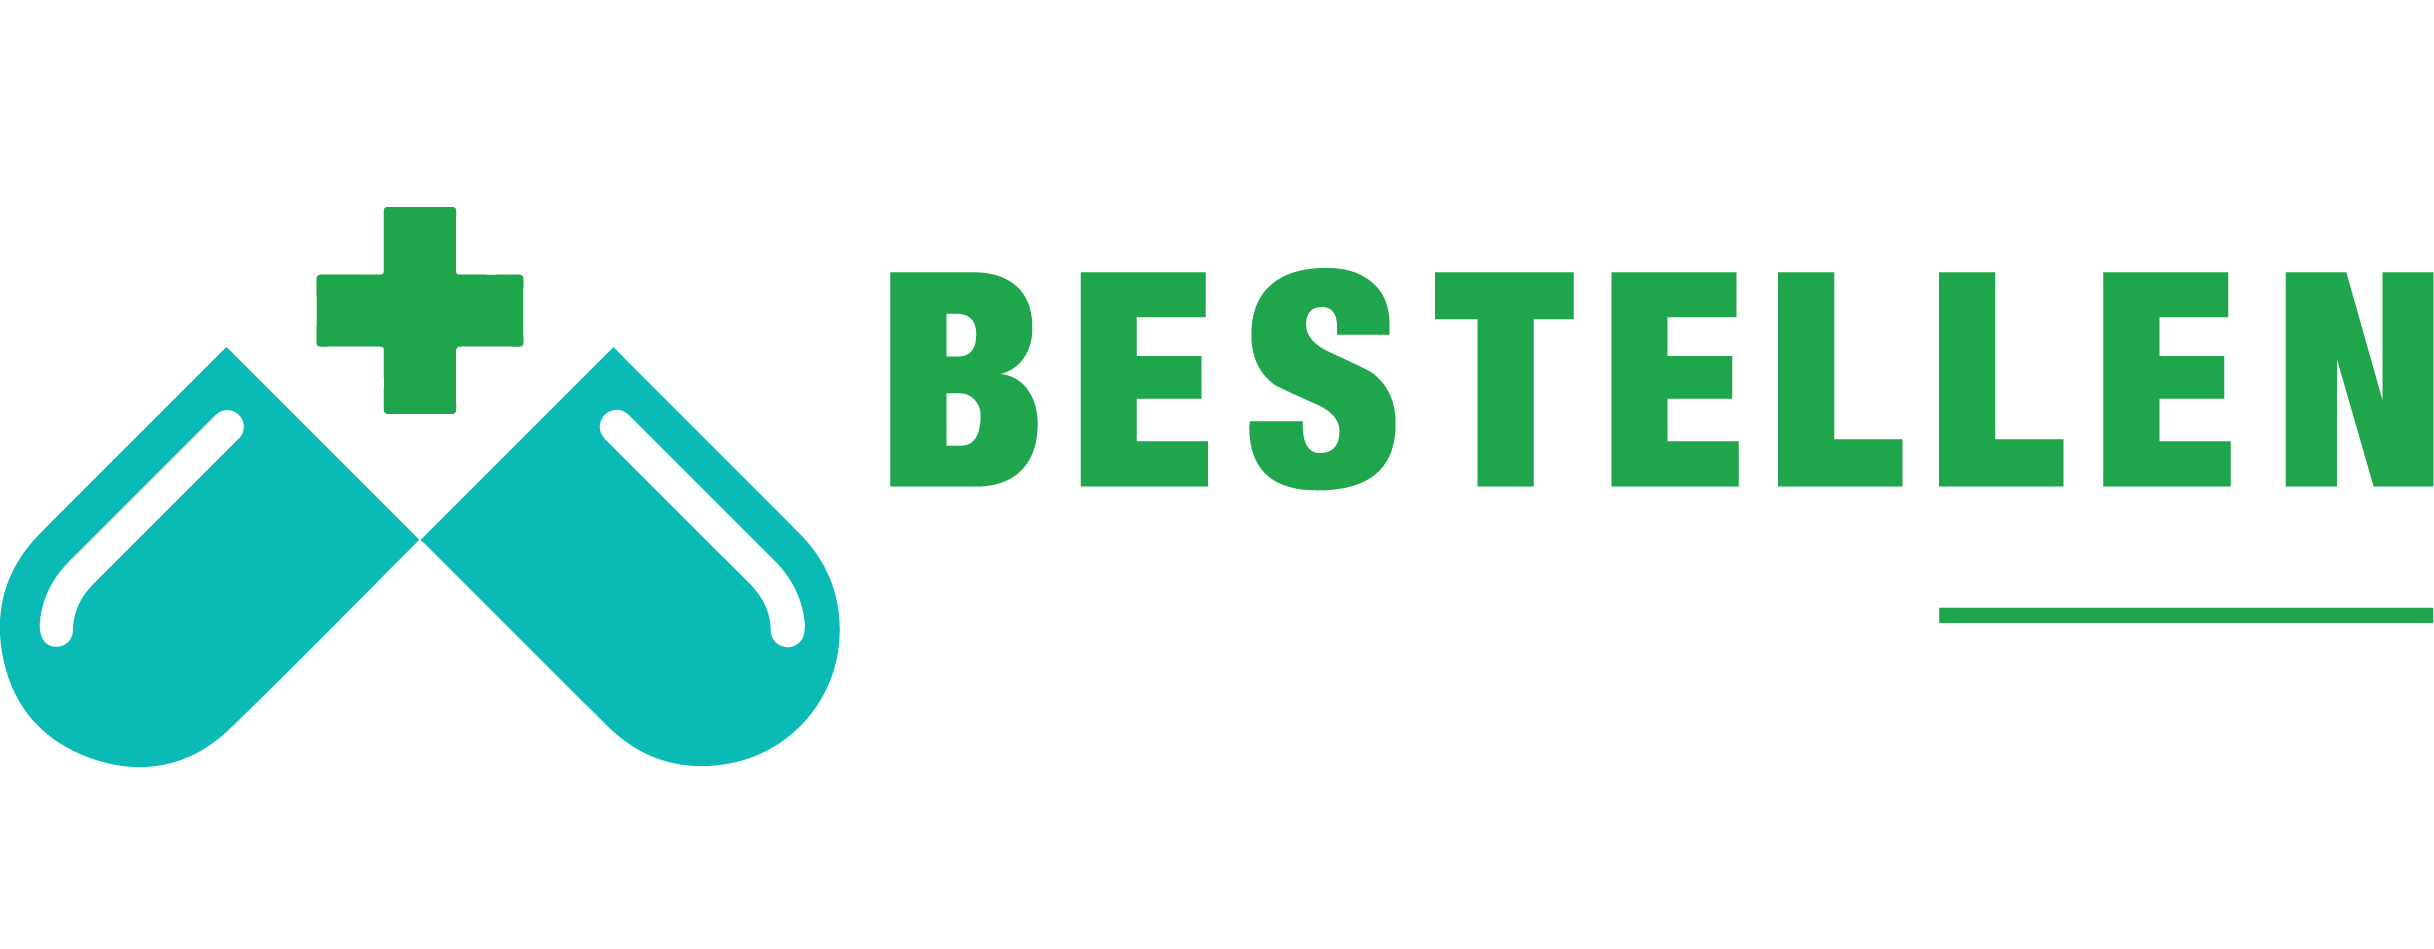 Bestellen medicijnen Logo